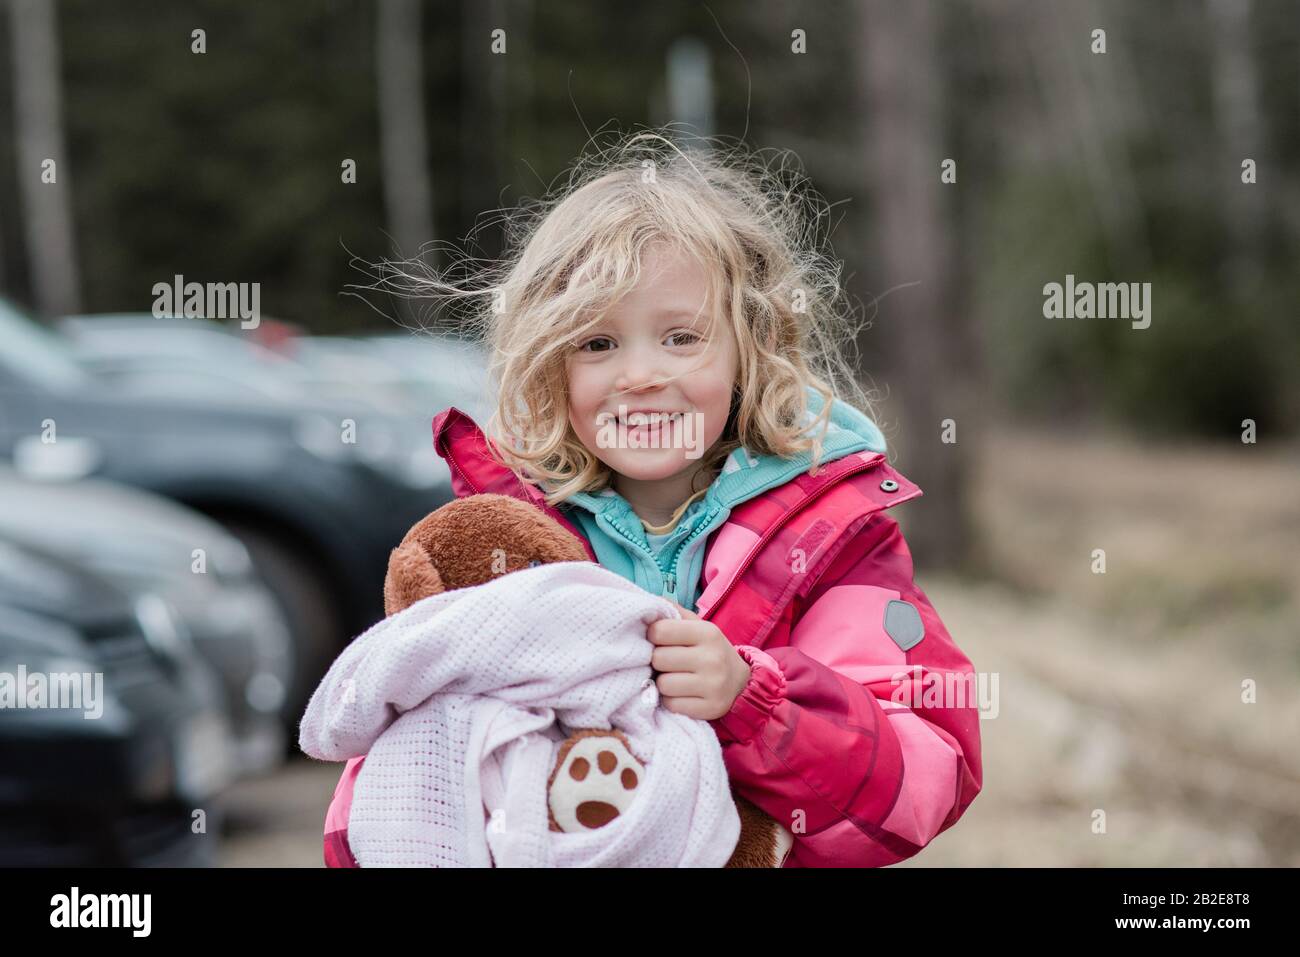 Ehrliches Porträt eines jungen Mädchens, das mit unordentlichen Haaren lächelt Stockfoto